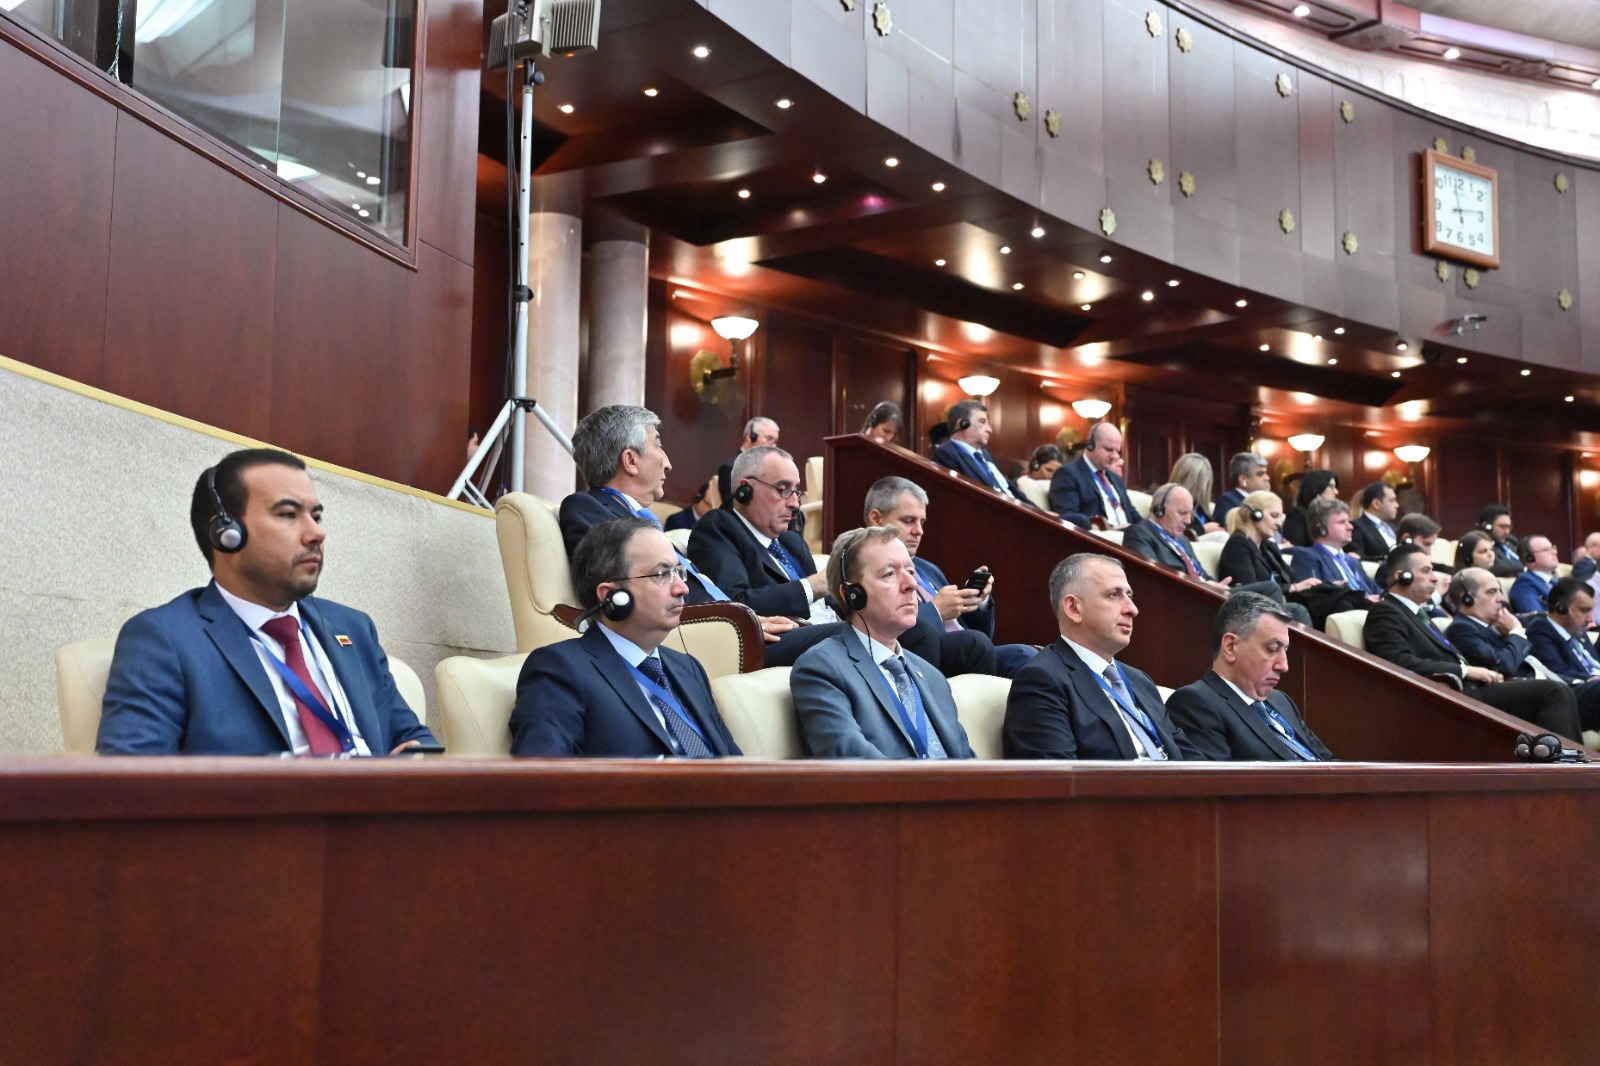 Milli Majlis Meets in Plenary for National Leader Heydar Aliyev`s Centenary